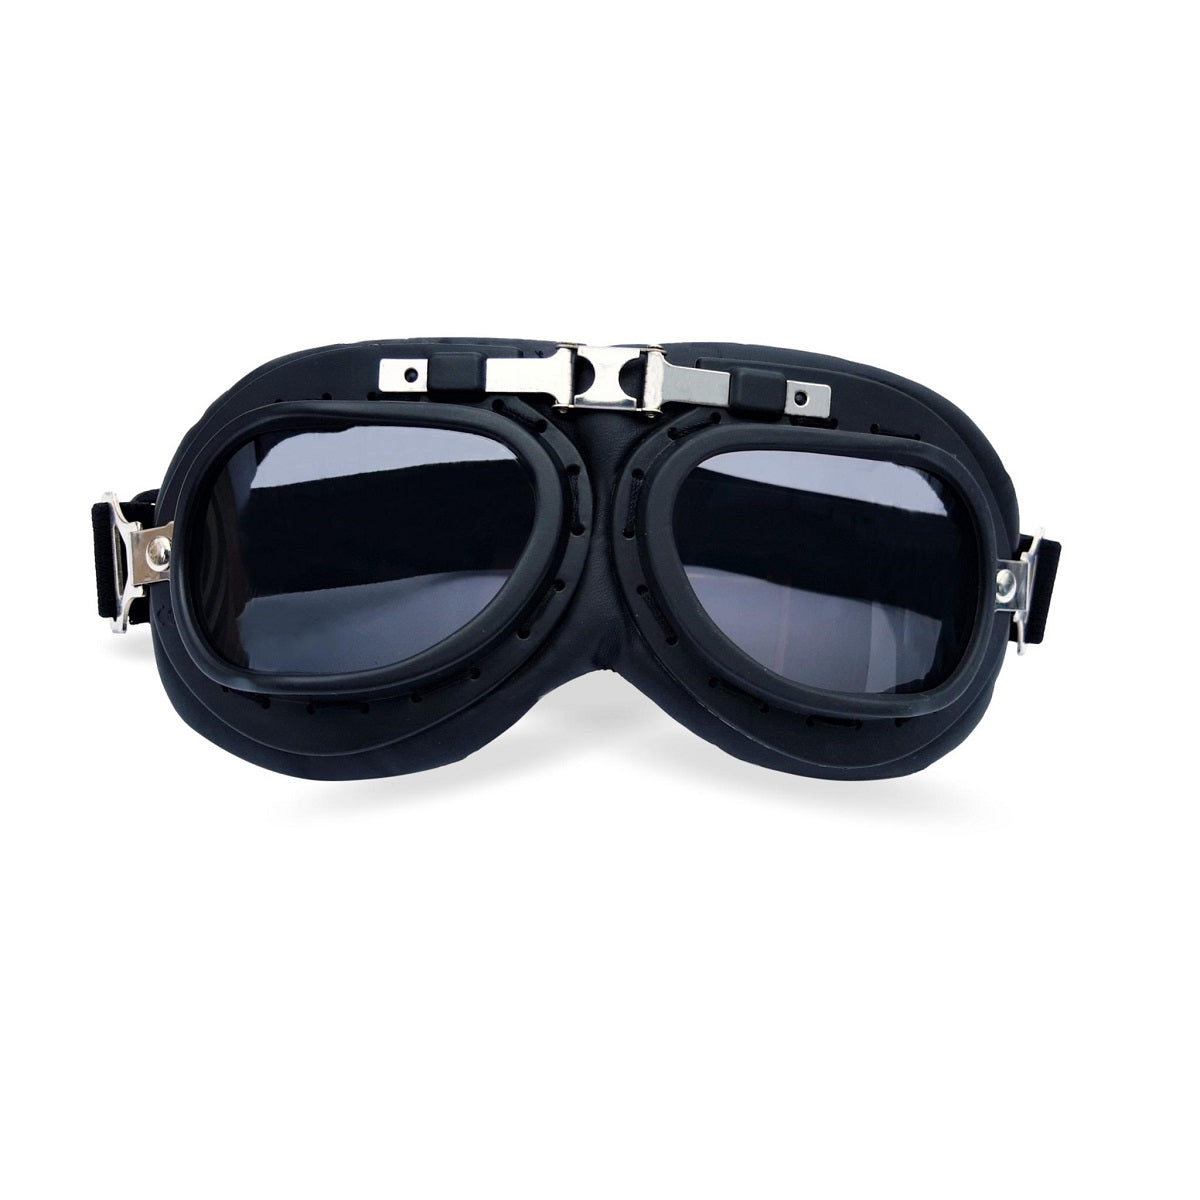 Lunettes Aviator Goggle T2 chrome noir, lunettes moto vintage